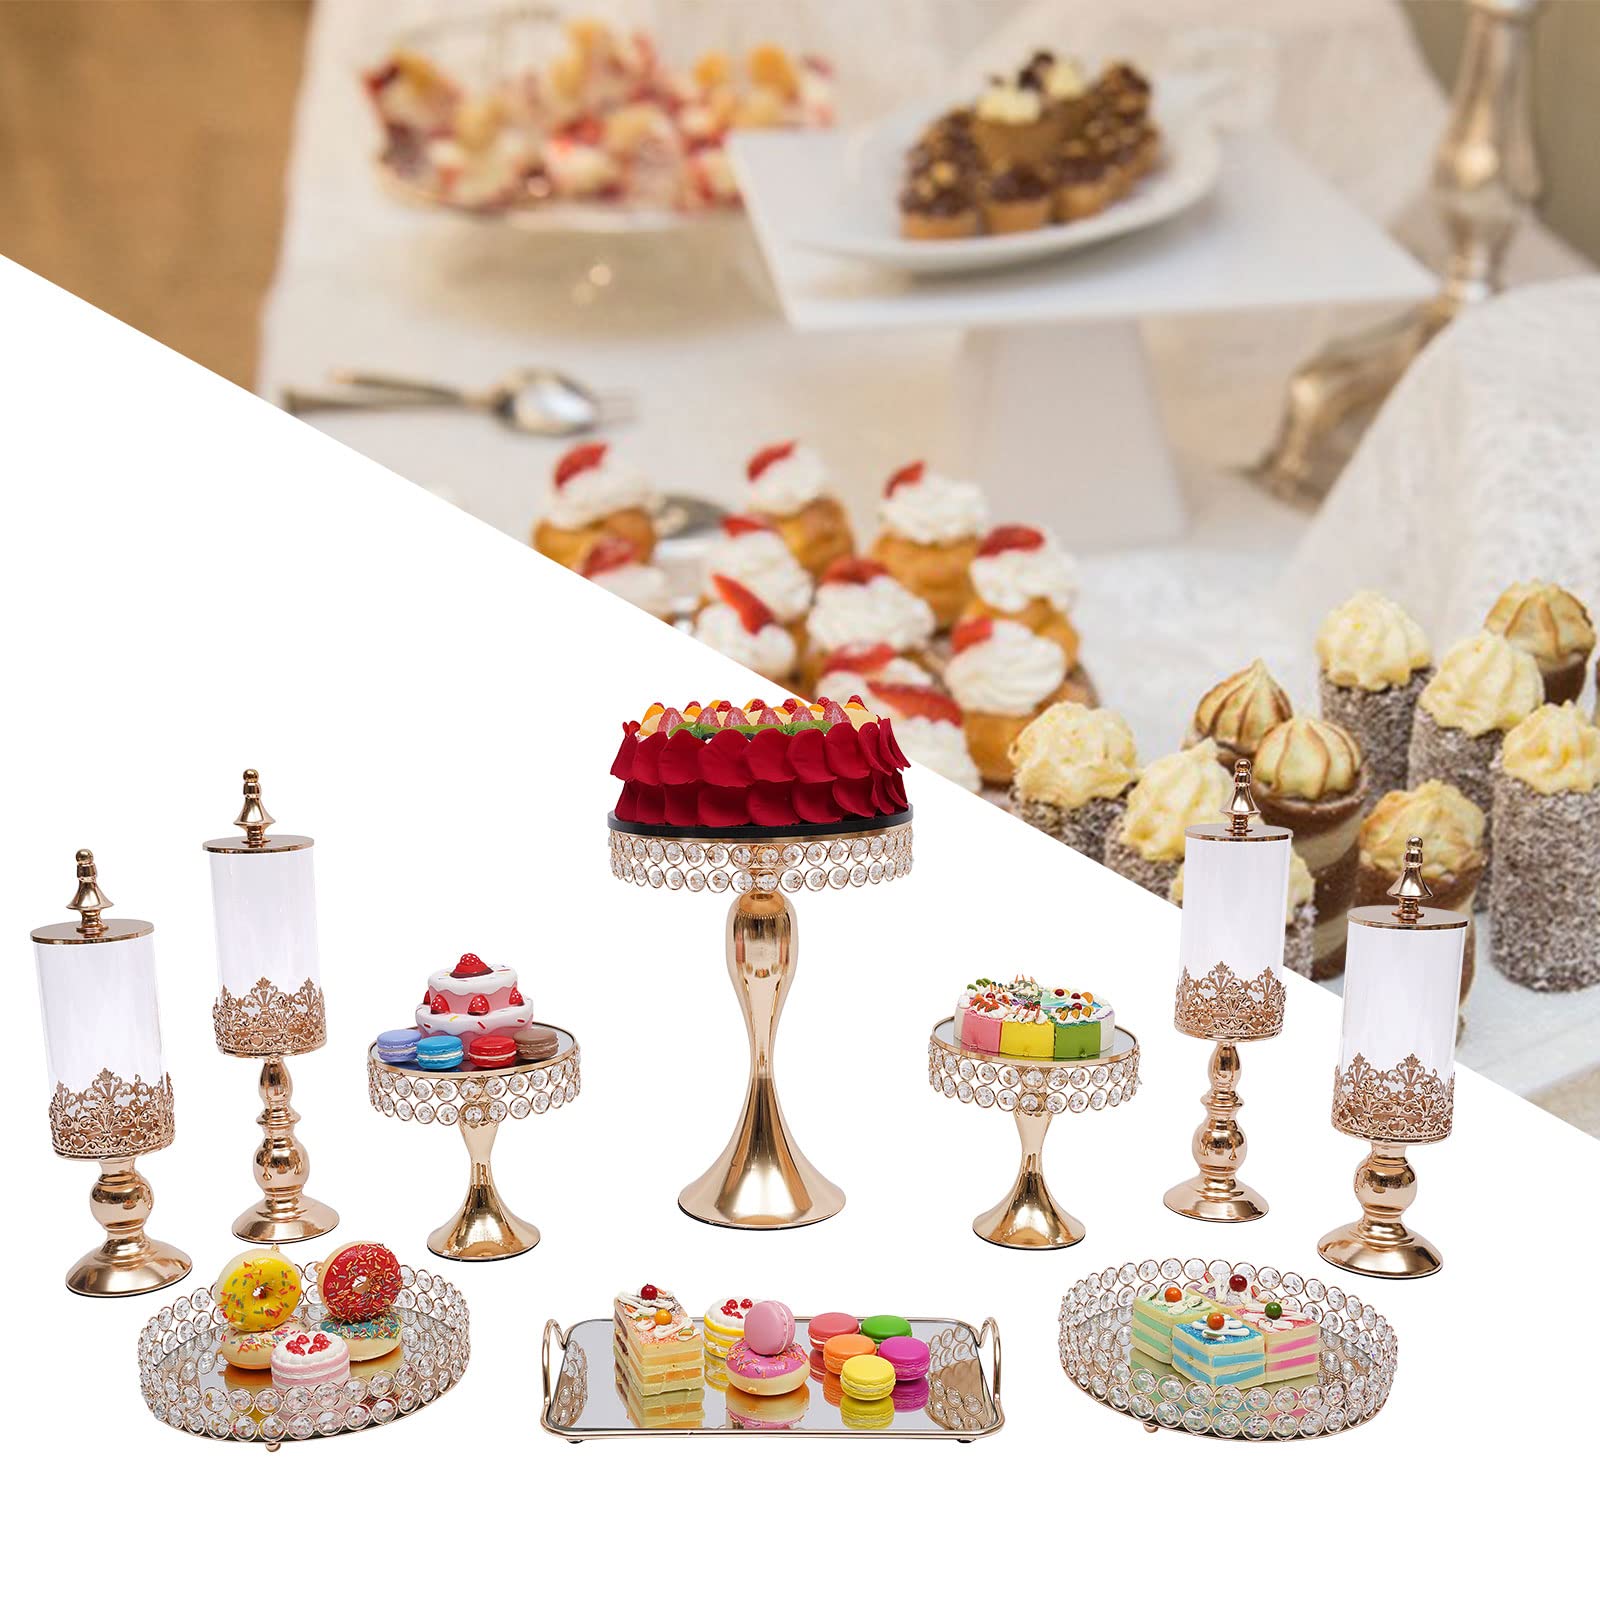  Non seulement les fruits, les gâteaux et les desserts sont exposés, mais aussi une décoration élégante pour votre maison.